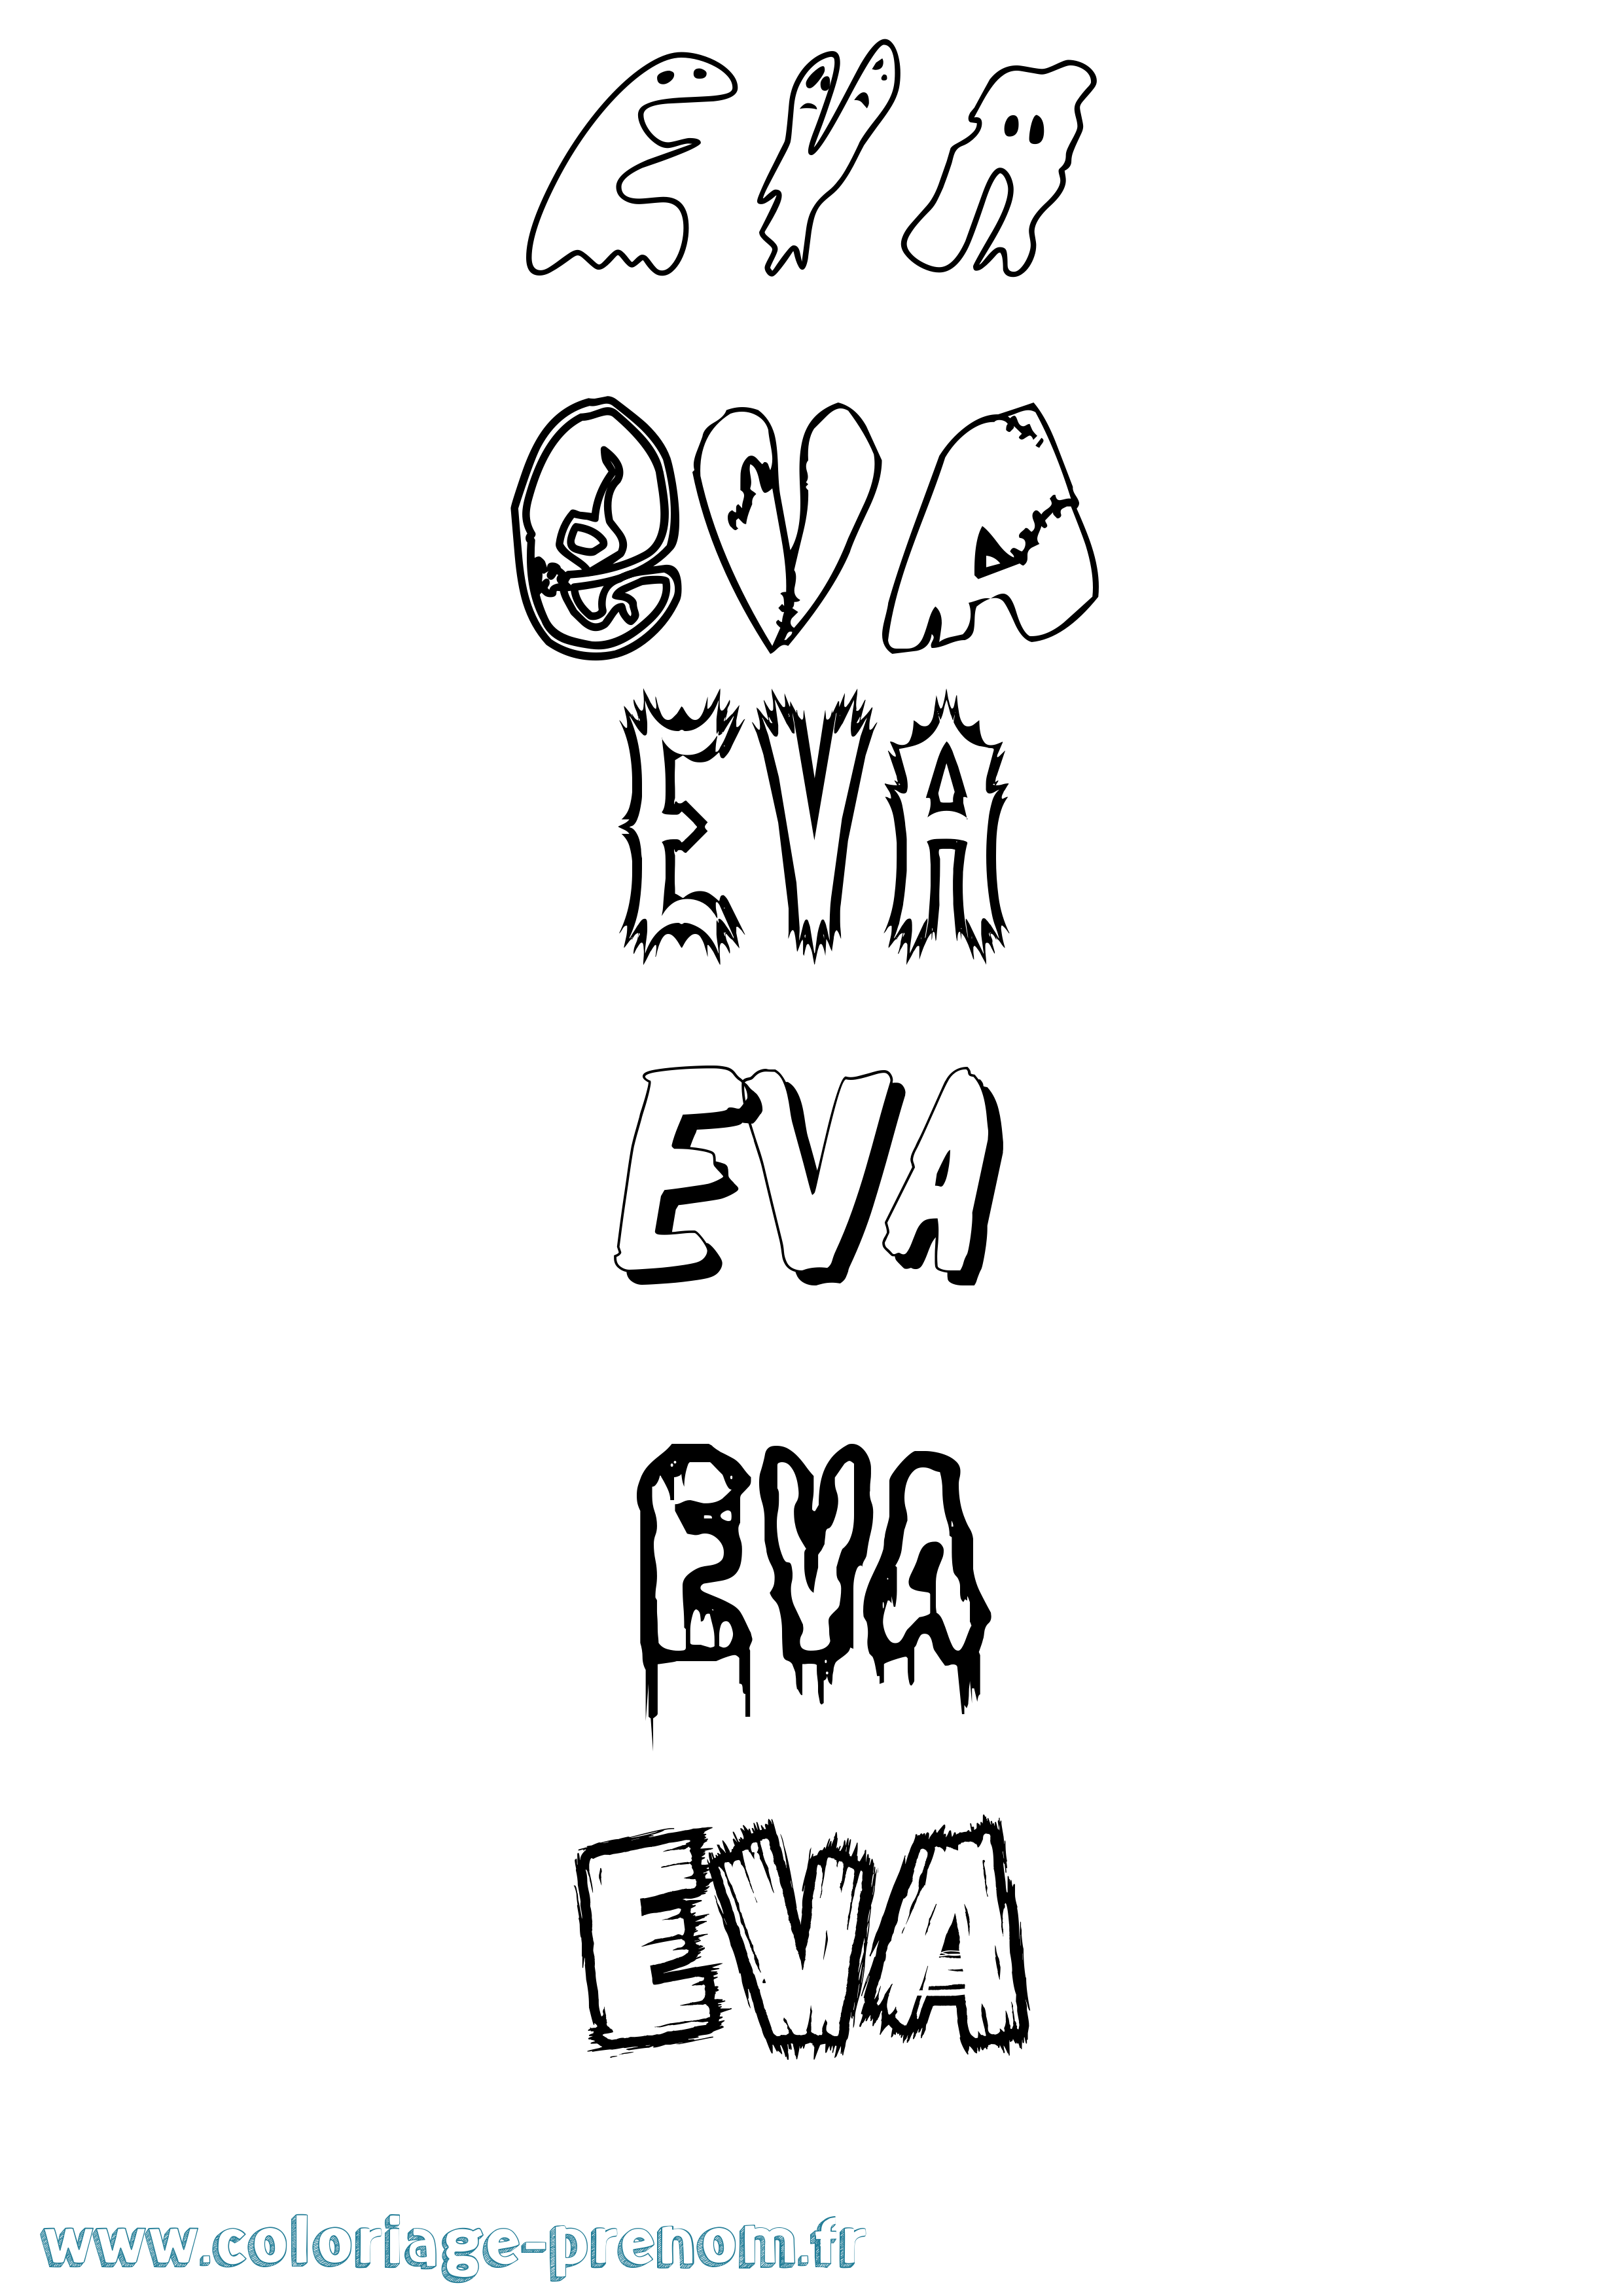 Coloriage prénom Eva Frisson